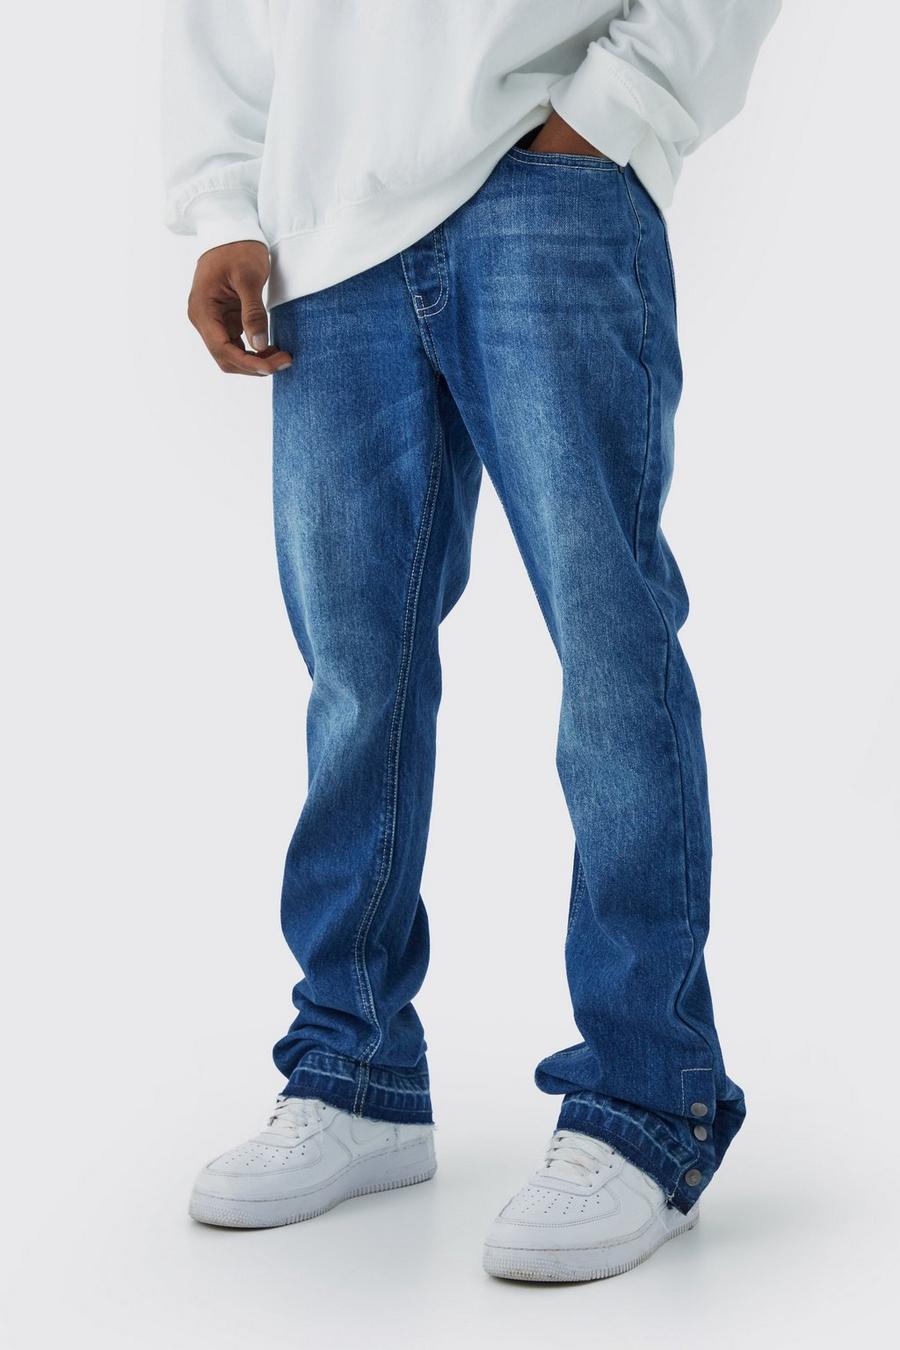 Jeans Slim Fit in denim rigido a zampa con bottoni a pressione sul fondo, Antique blue image number 1